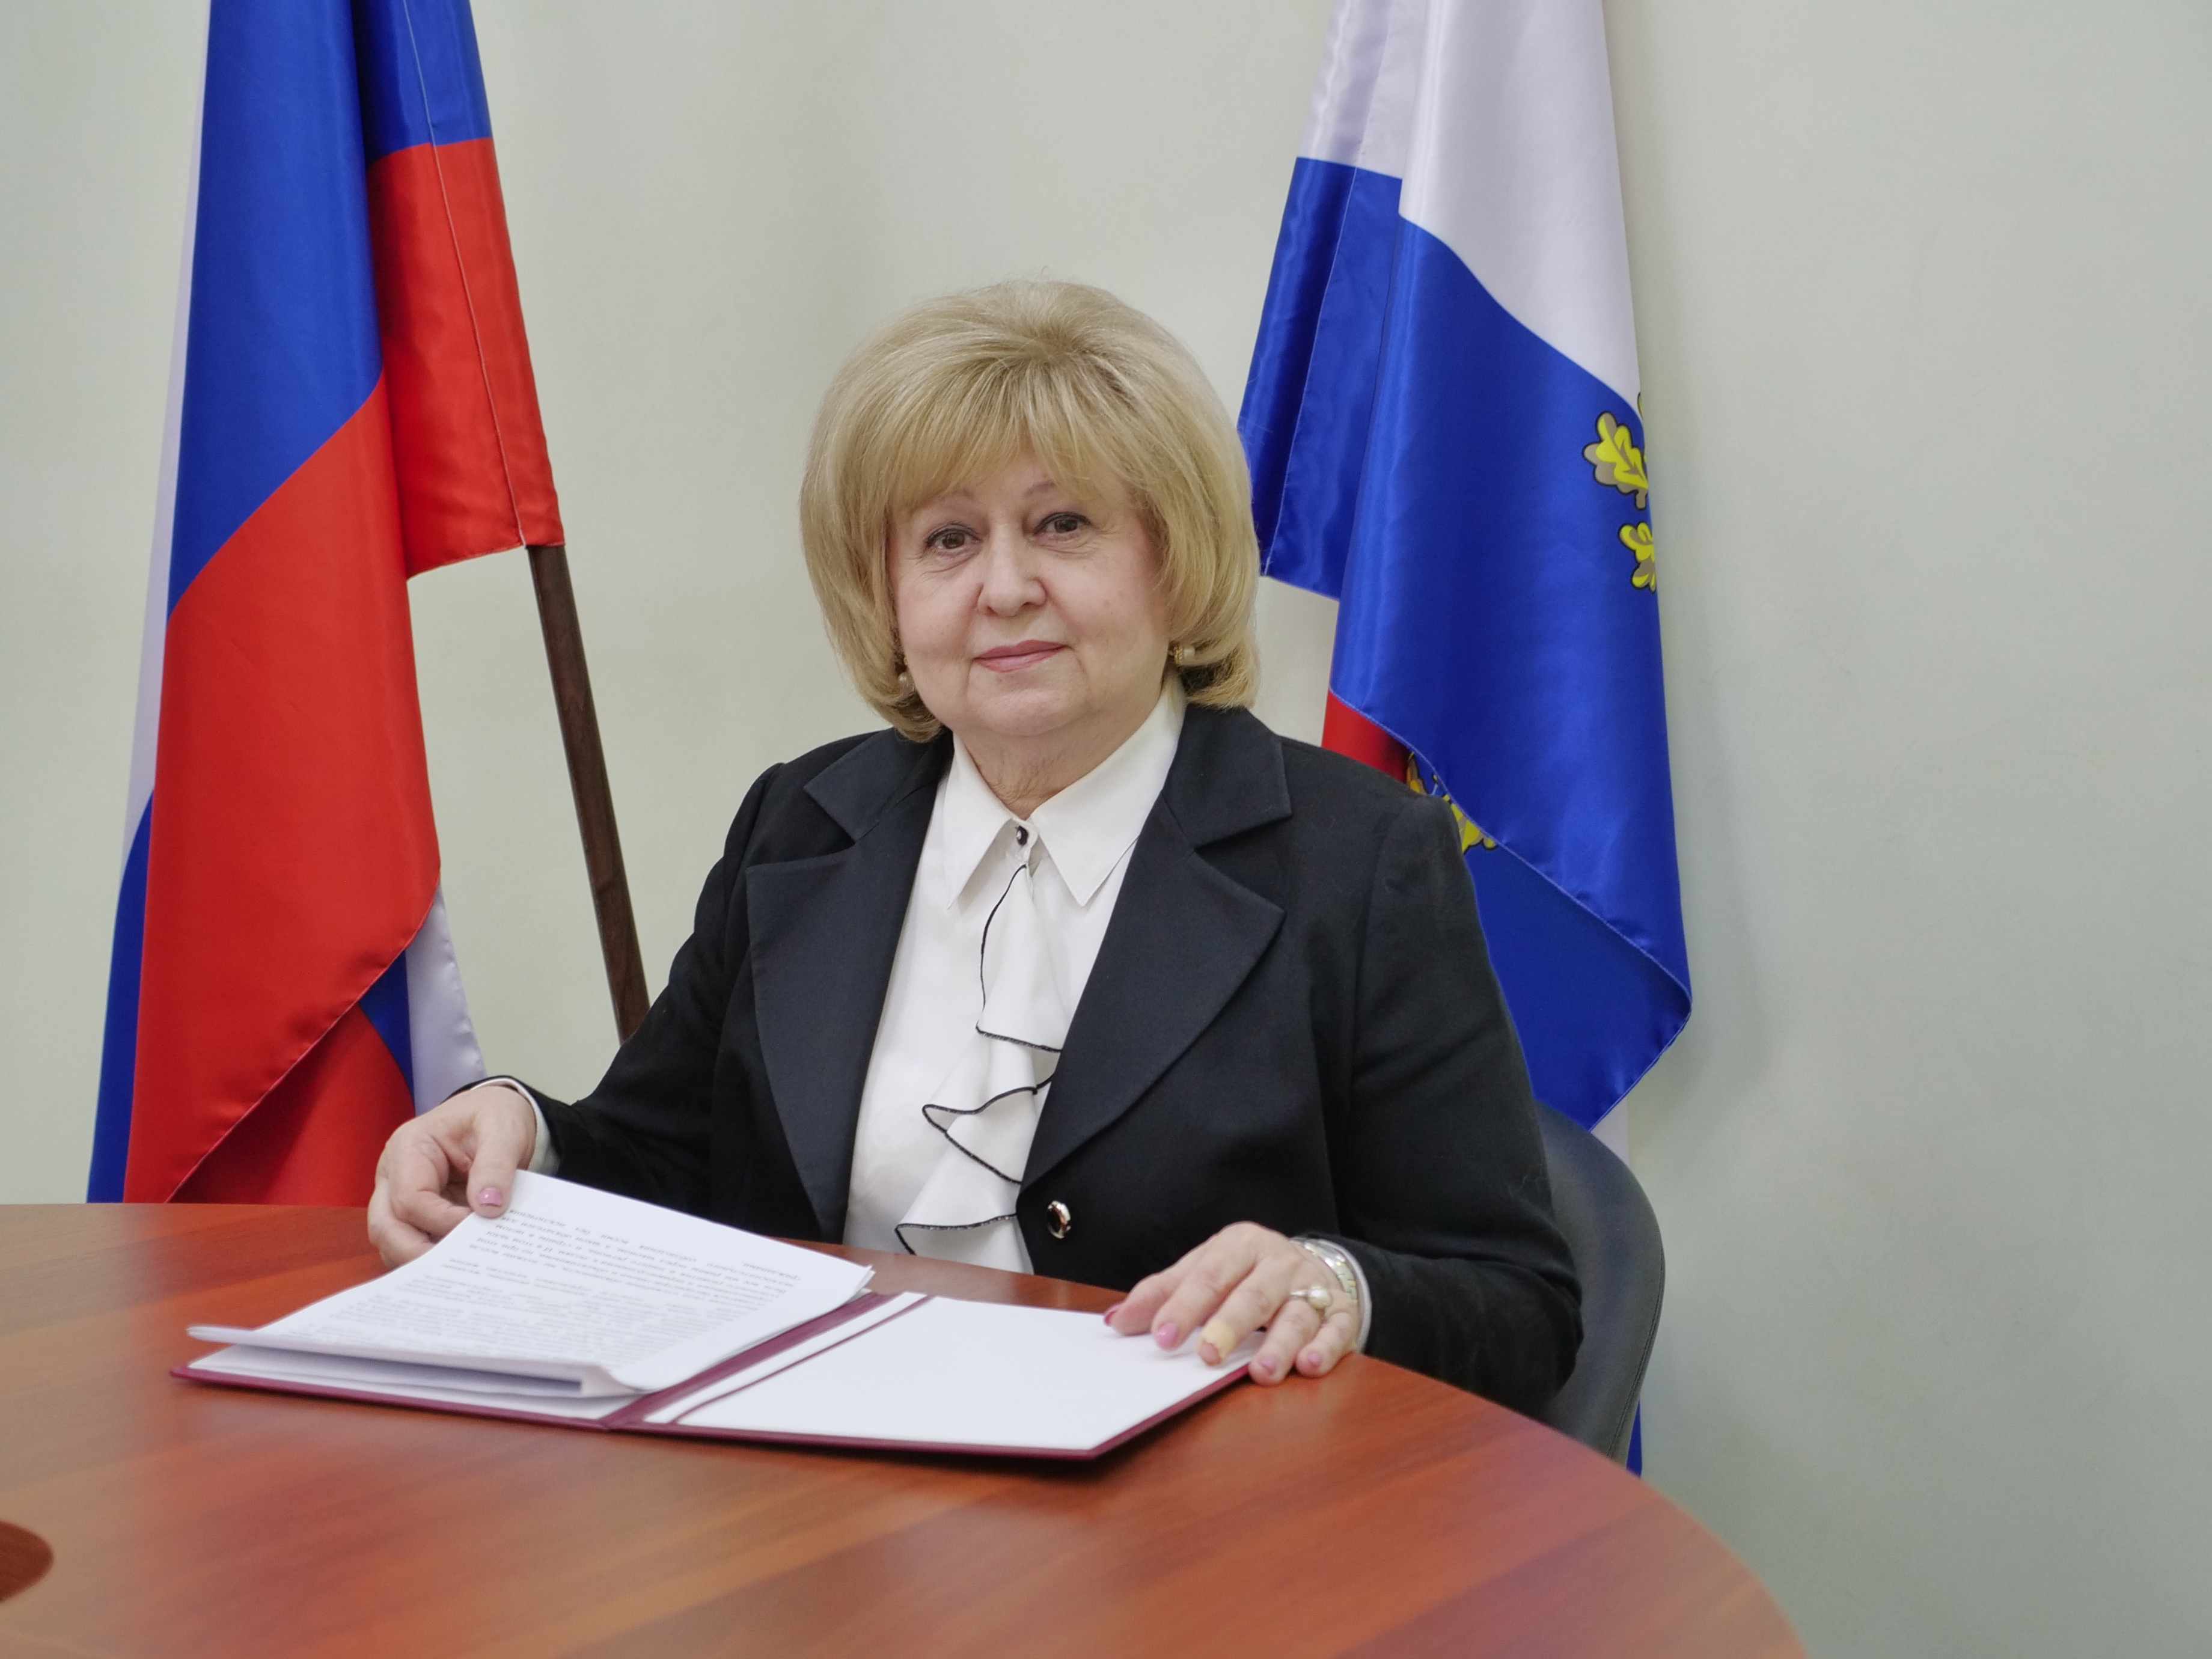 Ольга Гальцова, Уполномоченный по правам человека в Самарской области